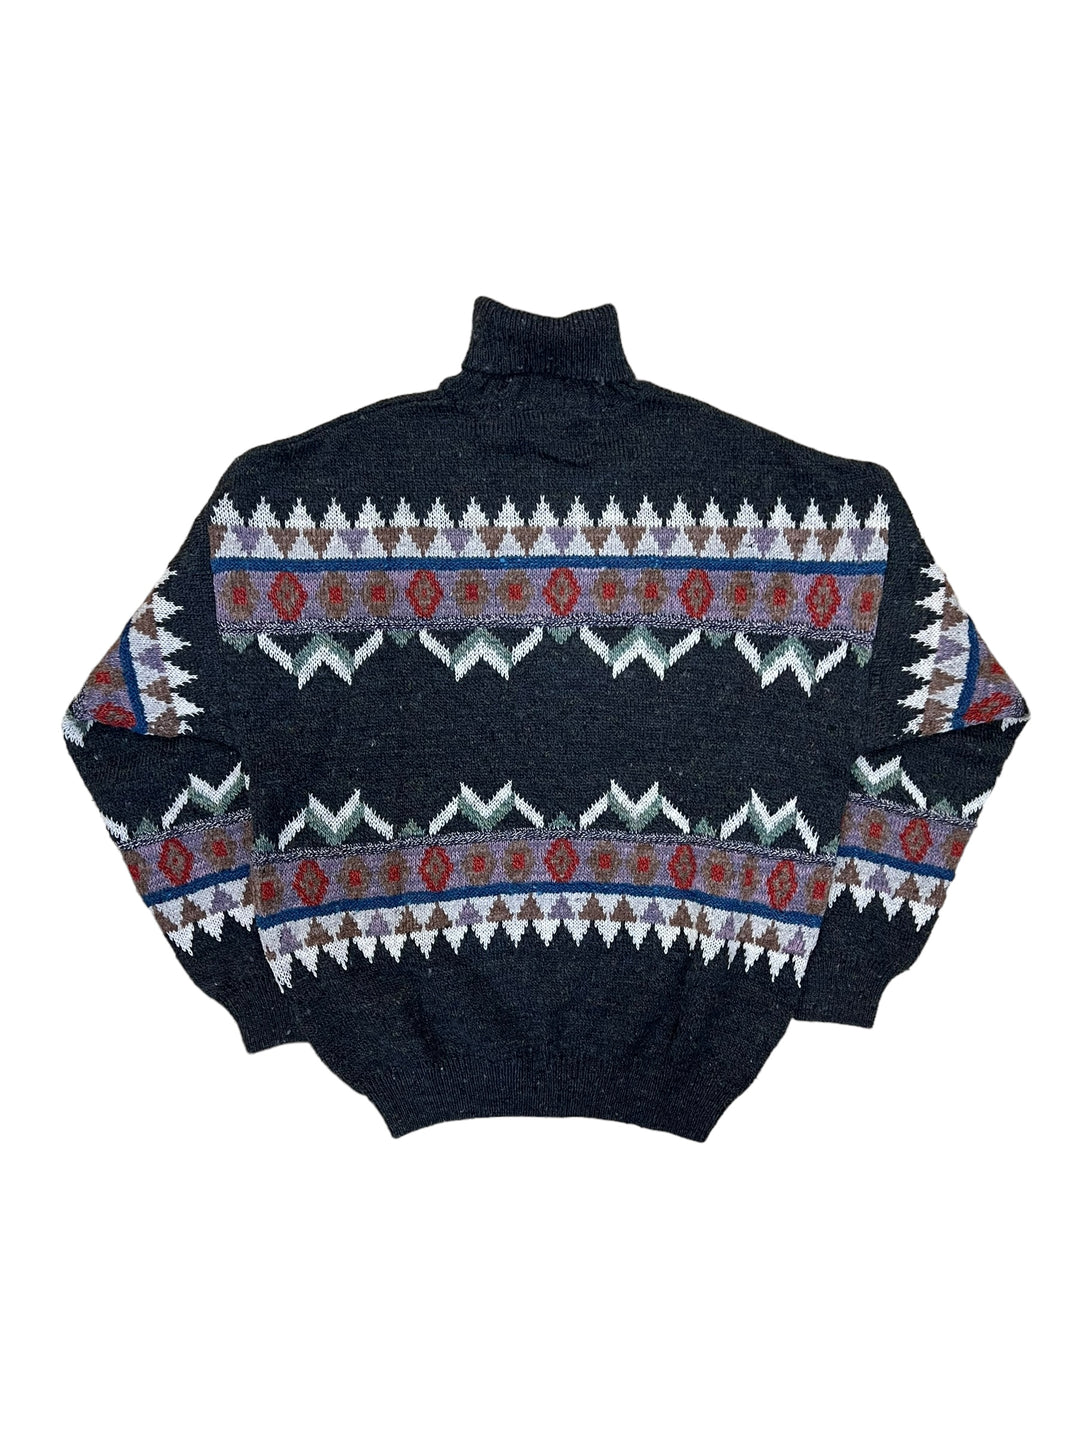 Vintage turtleneck sweater men’s large